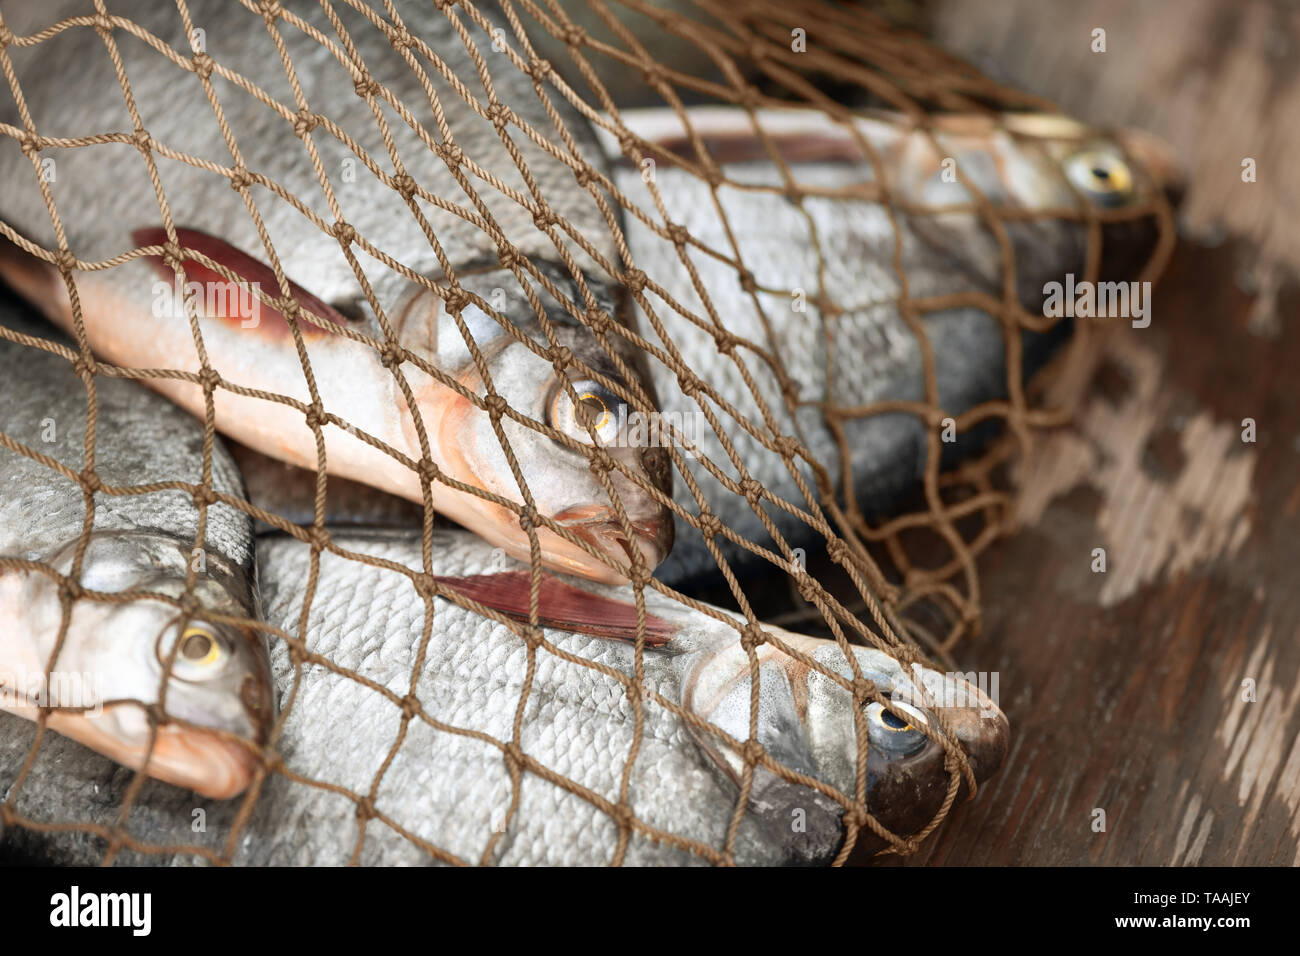 Die gefangenen Fische in einem fischernetz an Bord eines Bootes. Es gibt vier Brassen in einem illegalen Gang. Stockfoto